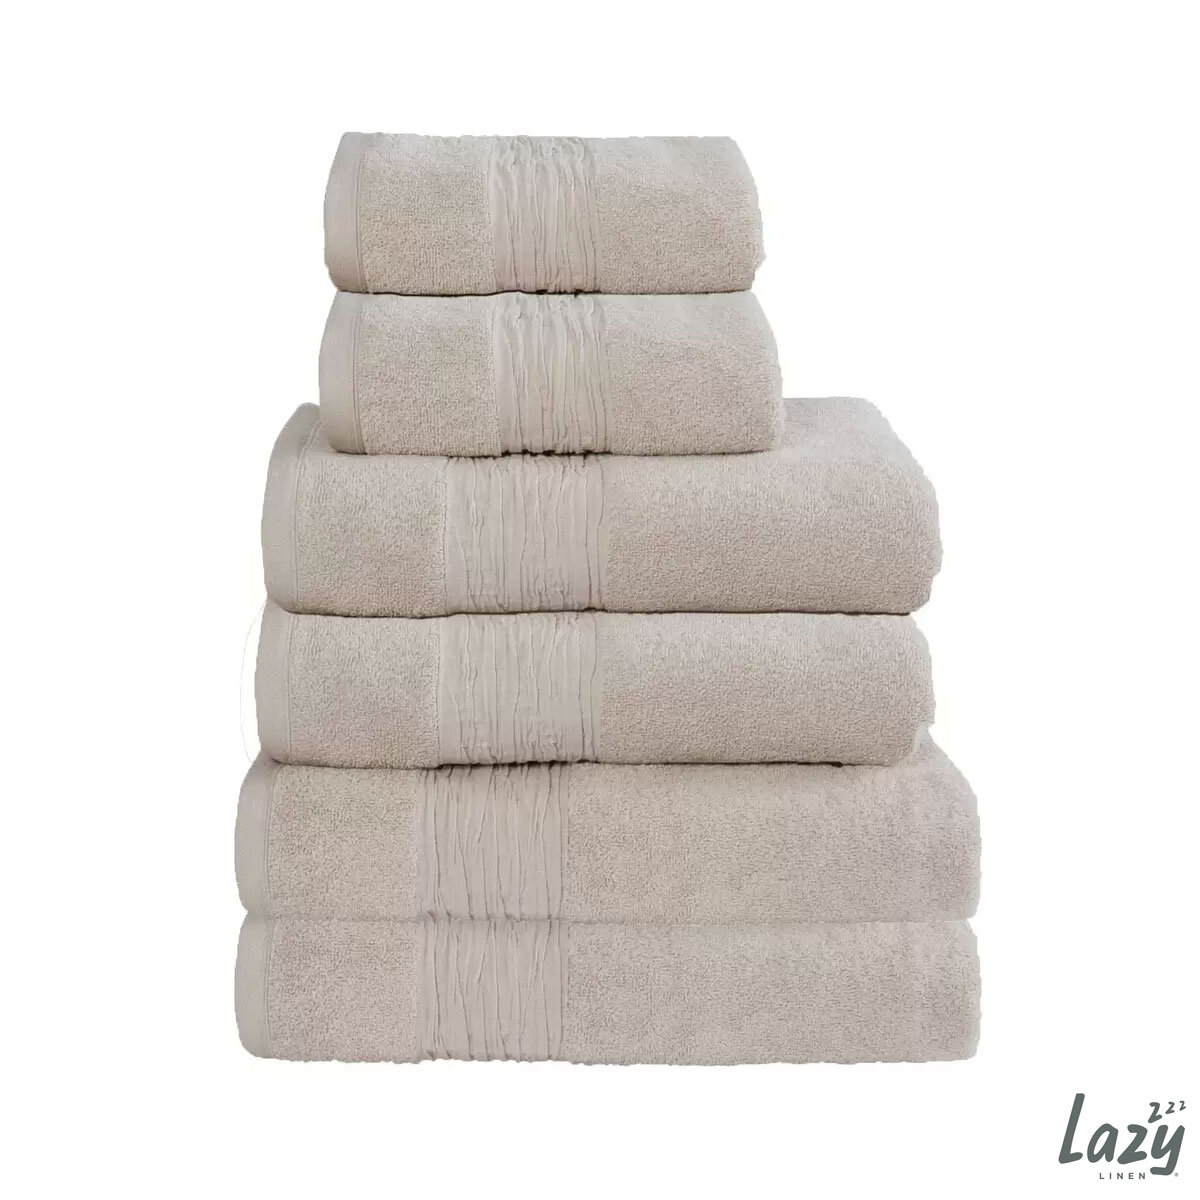 Lazy Linen 6 Piece Towel Bundle in 6 Colours, 2 x Hand Towels, 2 x Bath Towels & 2 x Bath Sheets